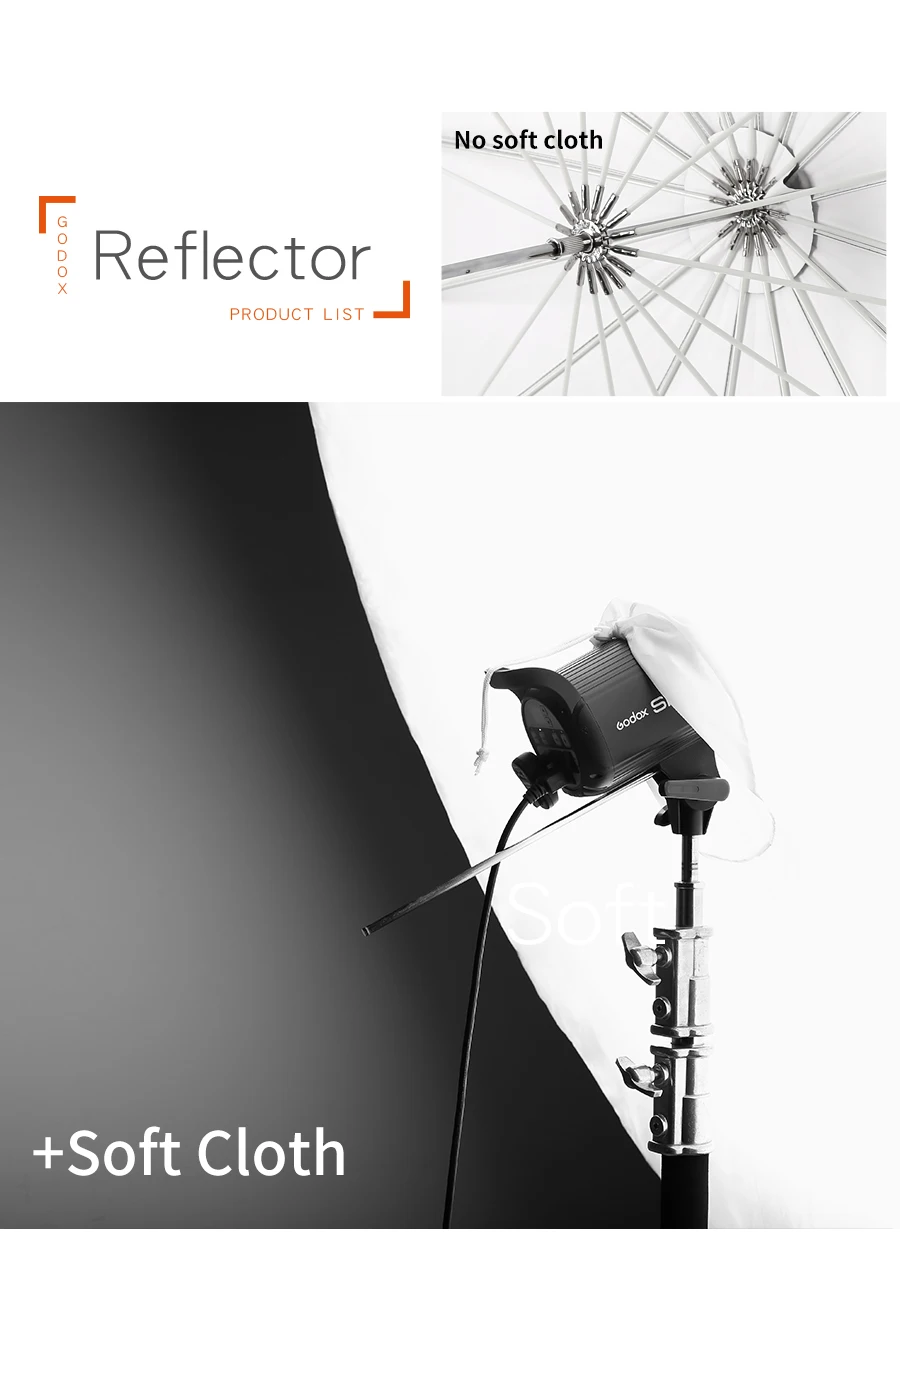 Godo x 6" 150 см 16-реберные Студия фотография белый полупрозрачный зонт из мягкого материала для студийной съемки светильник ing зонтик с большой крышкой рассеивателя